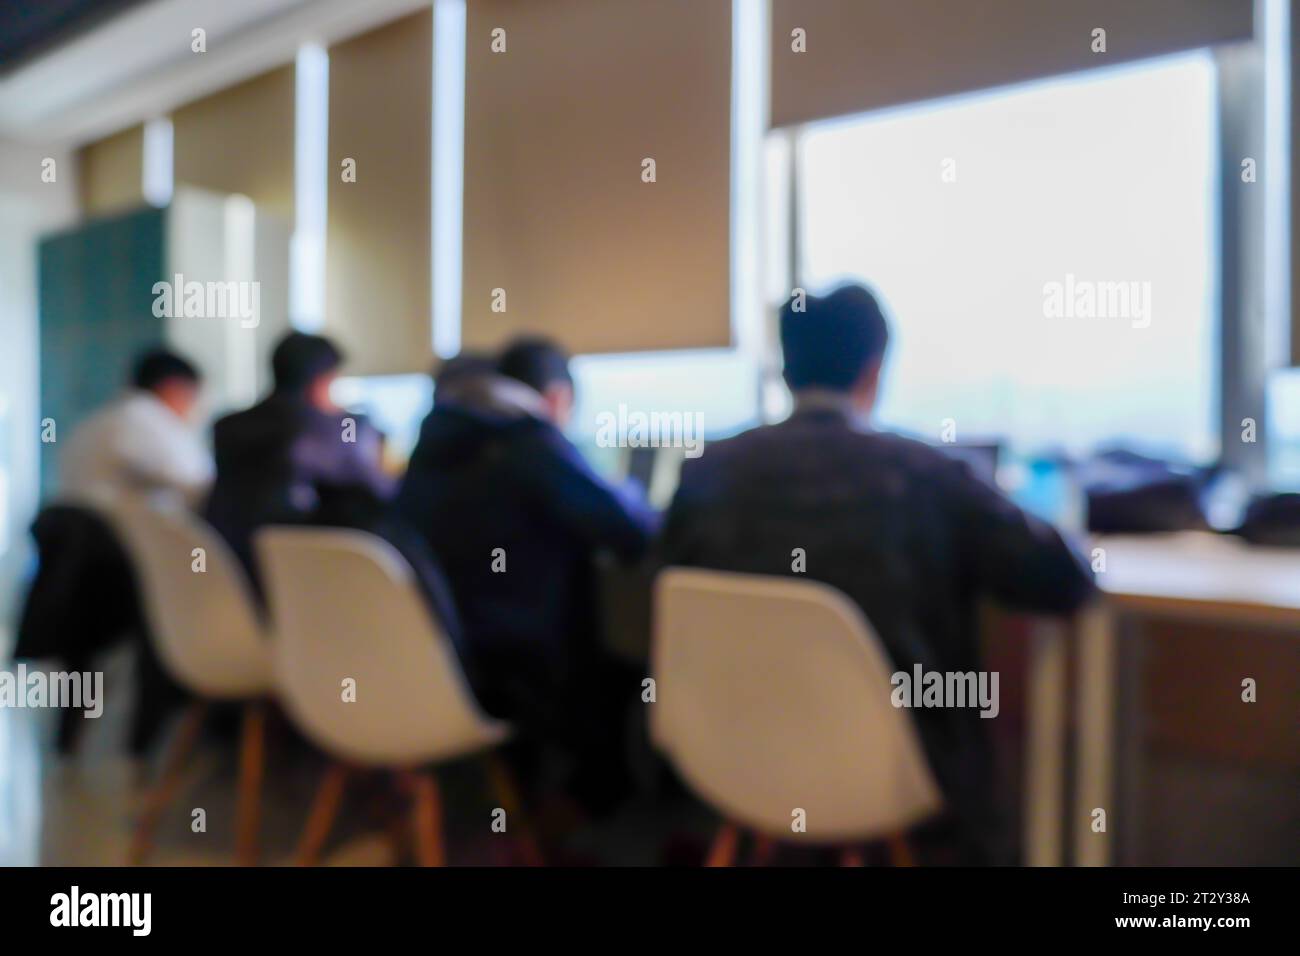 Eine fesselnde Gruppe von Männern, die fleißig vor ihren Laptops sitzen und arbeiten, in einem Raum in der Nähe eines Fensters Stockfoto